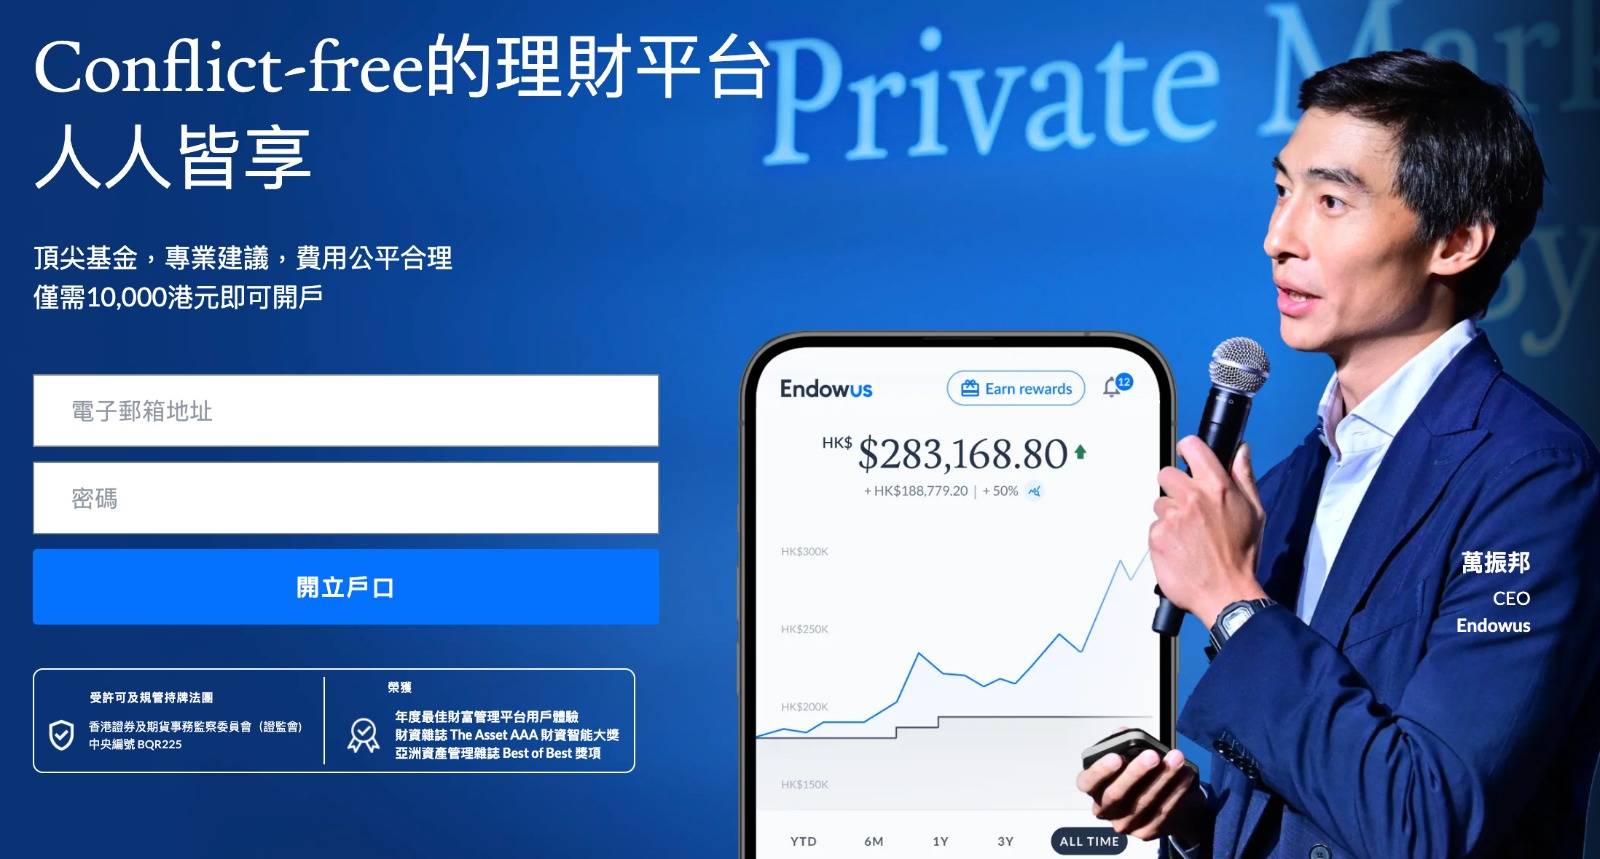 Endowus 智安投私人財富登陸香港 為客戶定制個性化方案